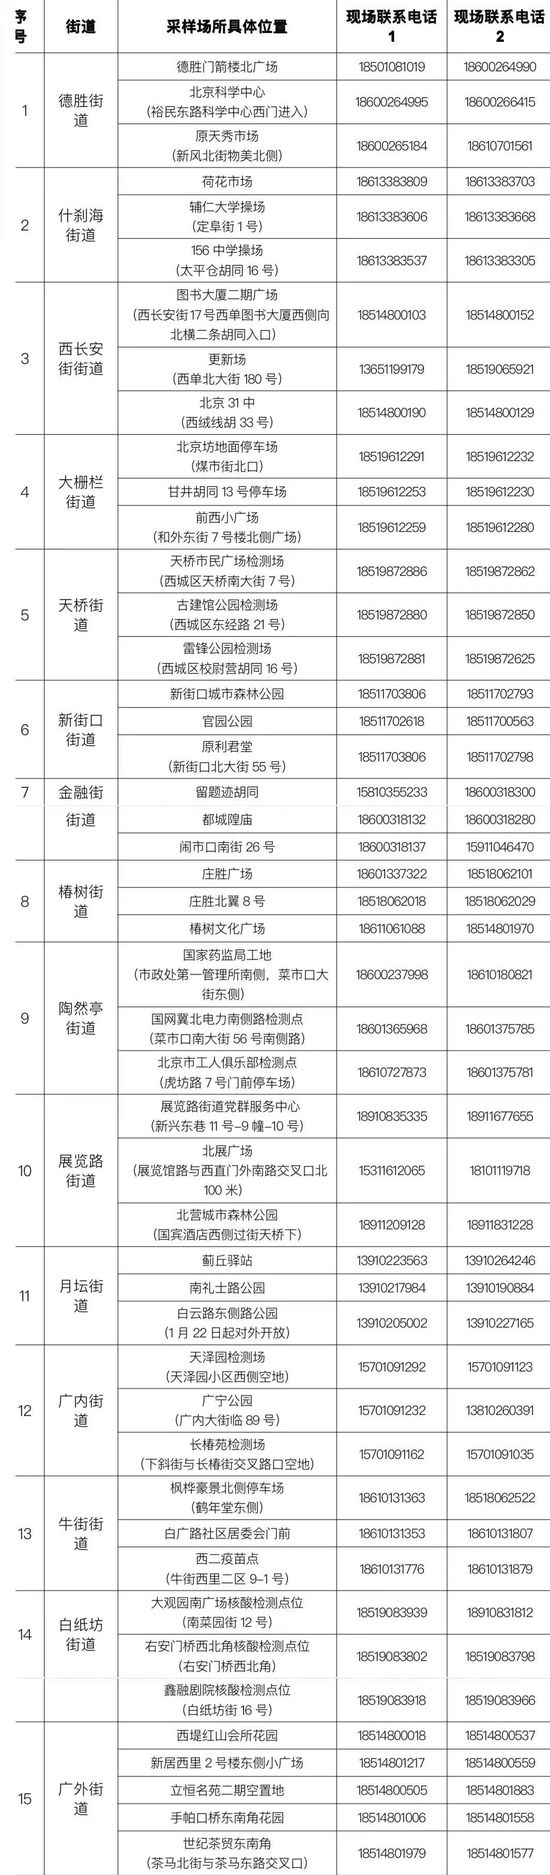 北京西城开放47个临时检测点，供“健康宝”弹窗提示人员前往采样